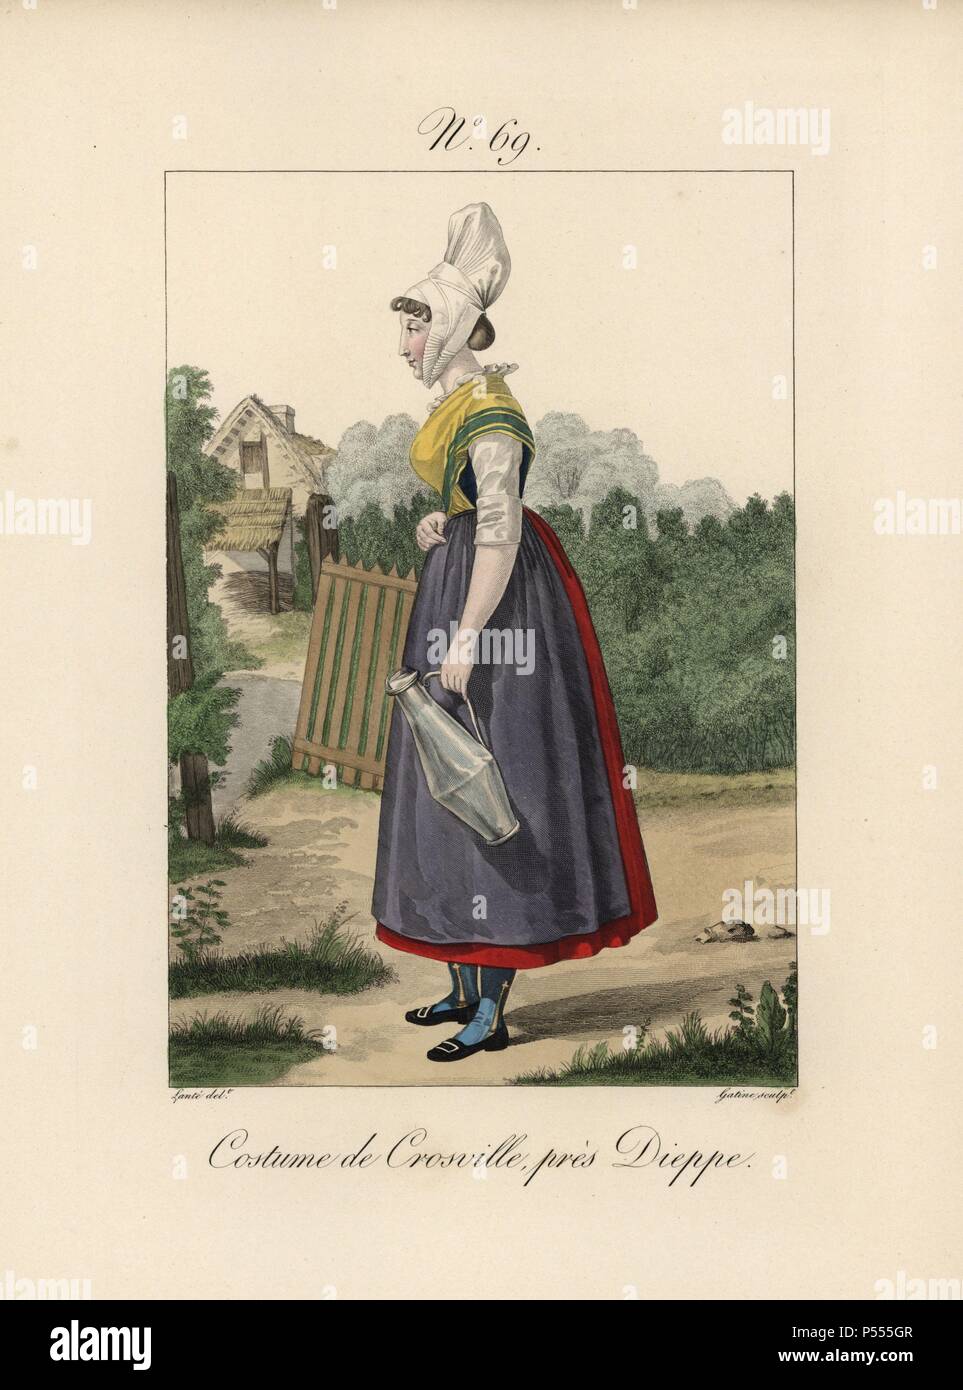 Kostüm von Sainte-foy, in der Nähe von Dieppe. Während die Motorhaube nicht so besonders ist, die Schuhe sind sehr elegant. Sie trägt einen Eimer Milch und steht vor einem alten Haus. Handcolorierte mode Platte Illustration von LANTE von Gatine von louis-marie's Lante' Kostüme des Gravierten femmes du Pays de Caux", 1827/1885. Mit ihren hohen Elsässischen spitze Hüte, die Frauen von Caux und der Normandie waren berühmt für die Eleganz und Stil. Stockfoto